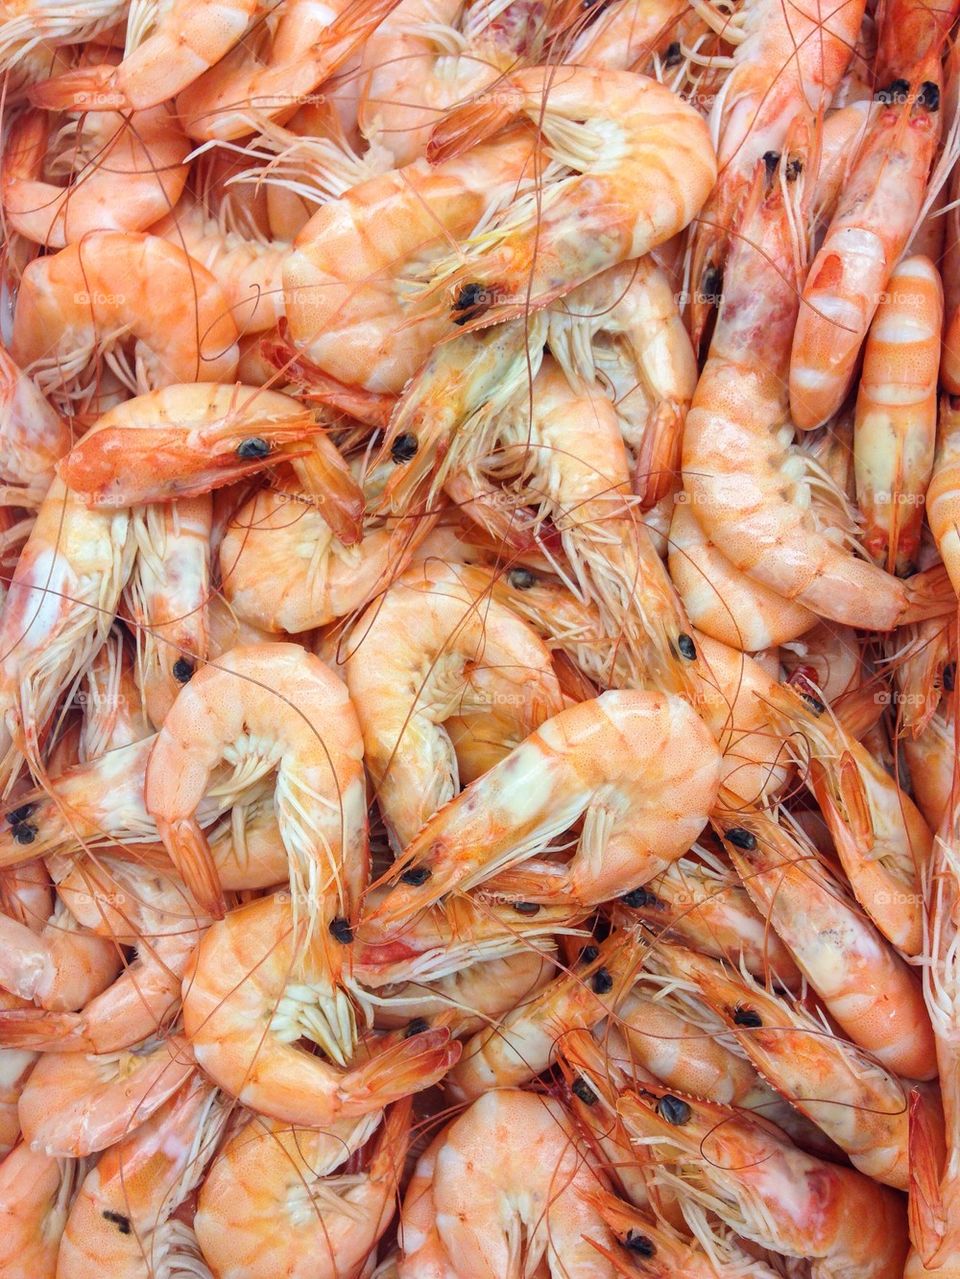 Full frame shot of shrimps